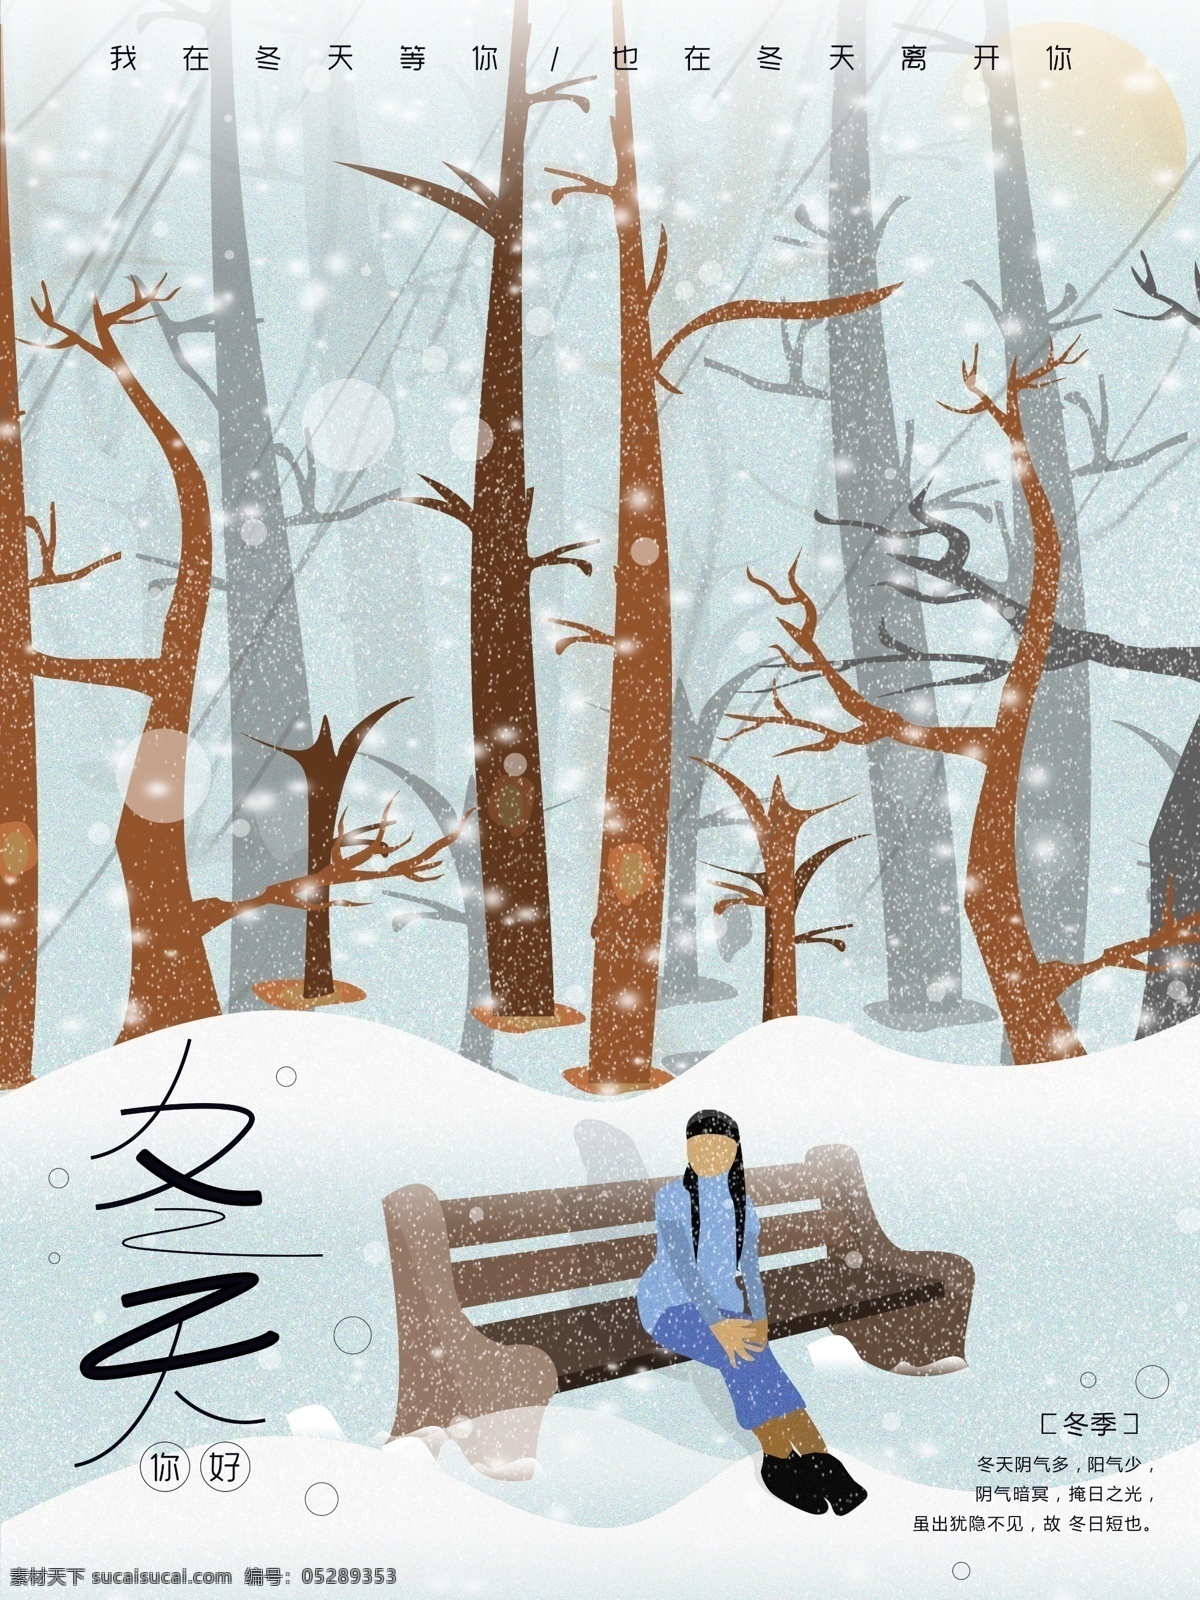 原创 插画 冬天 你好 节日 冬季下雪 雪花 问好 女孩 冰冷 寒冷 冰冻 节气 树林 凳子